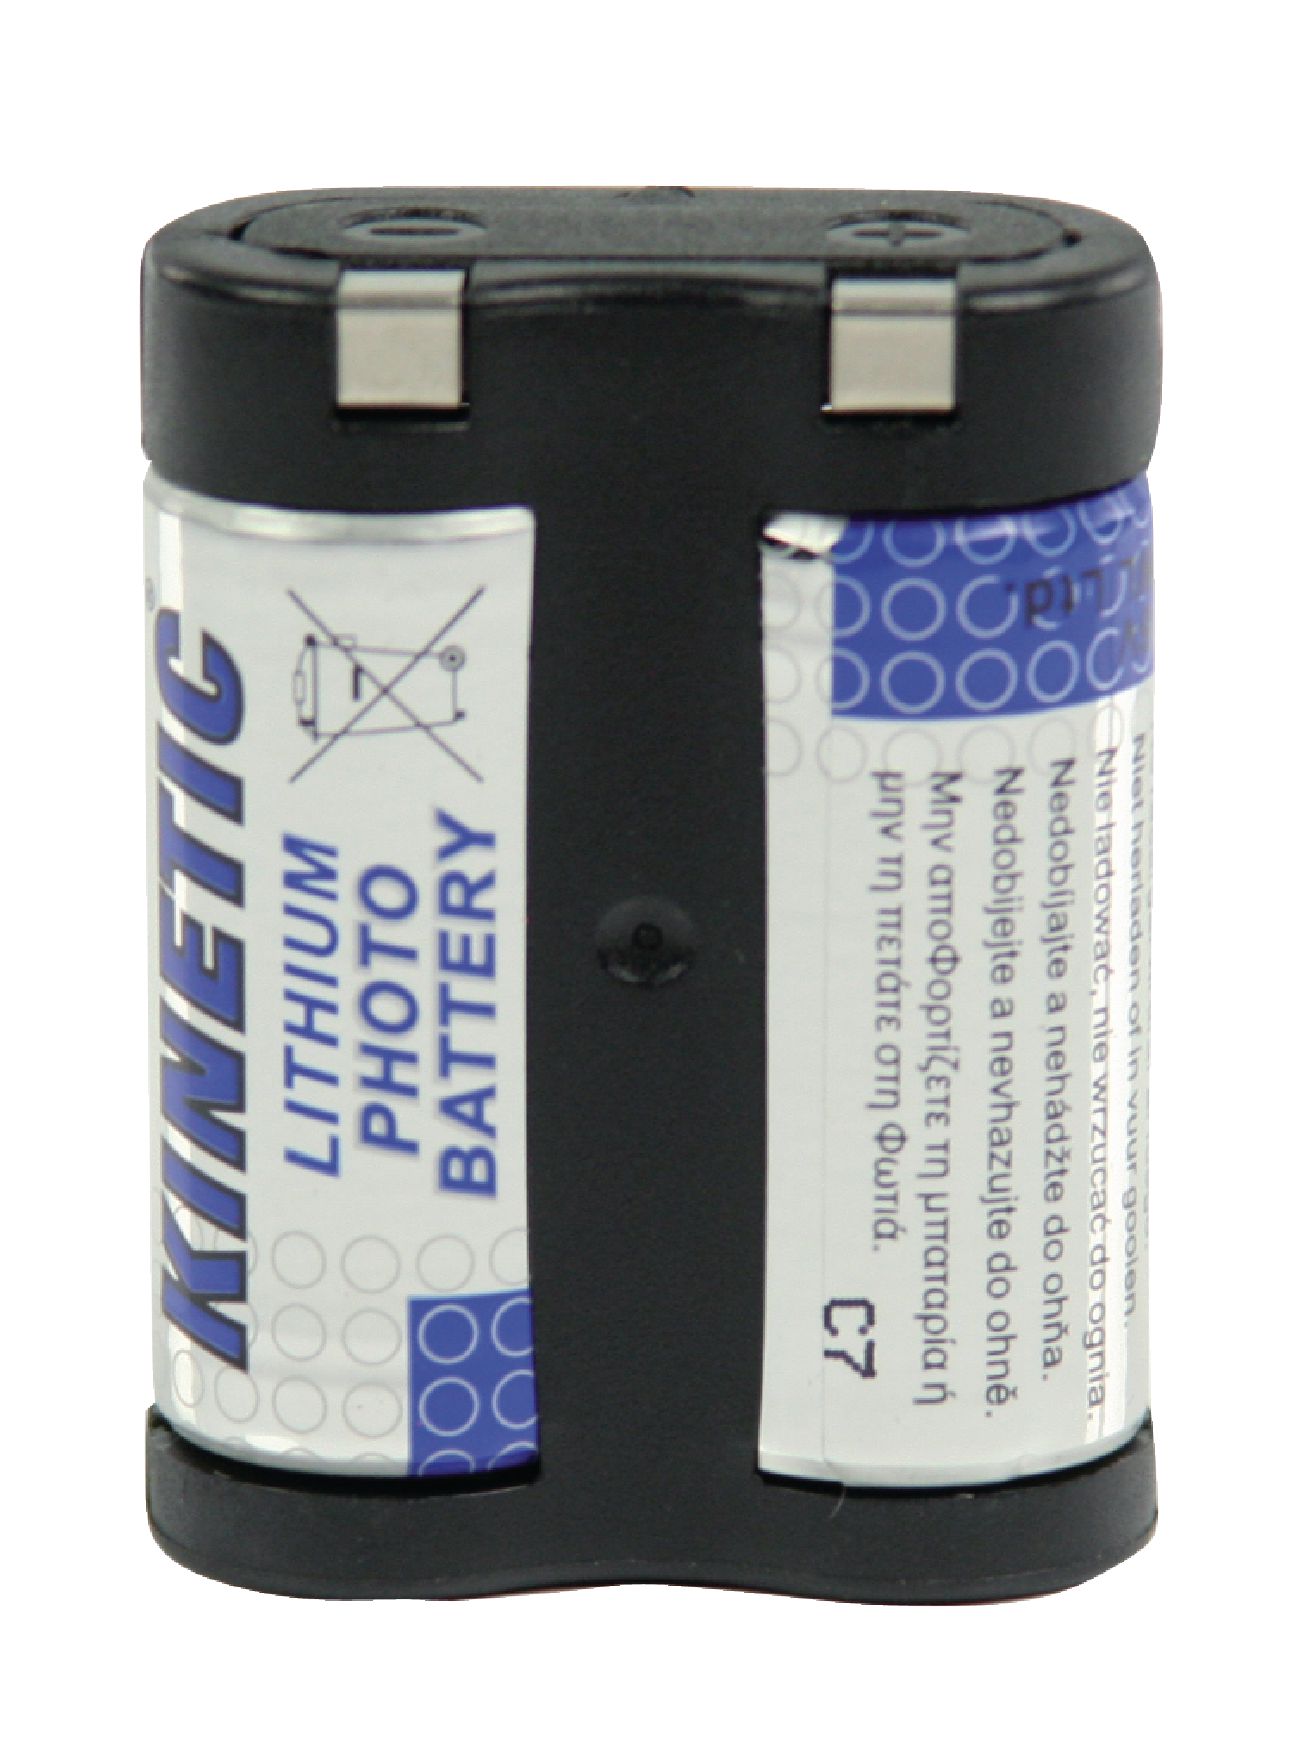 Batterie photo au lithium 6v 1600ma varta-6203.301.401